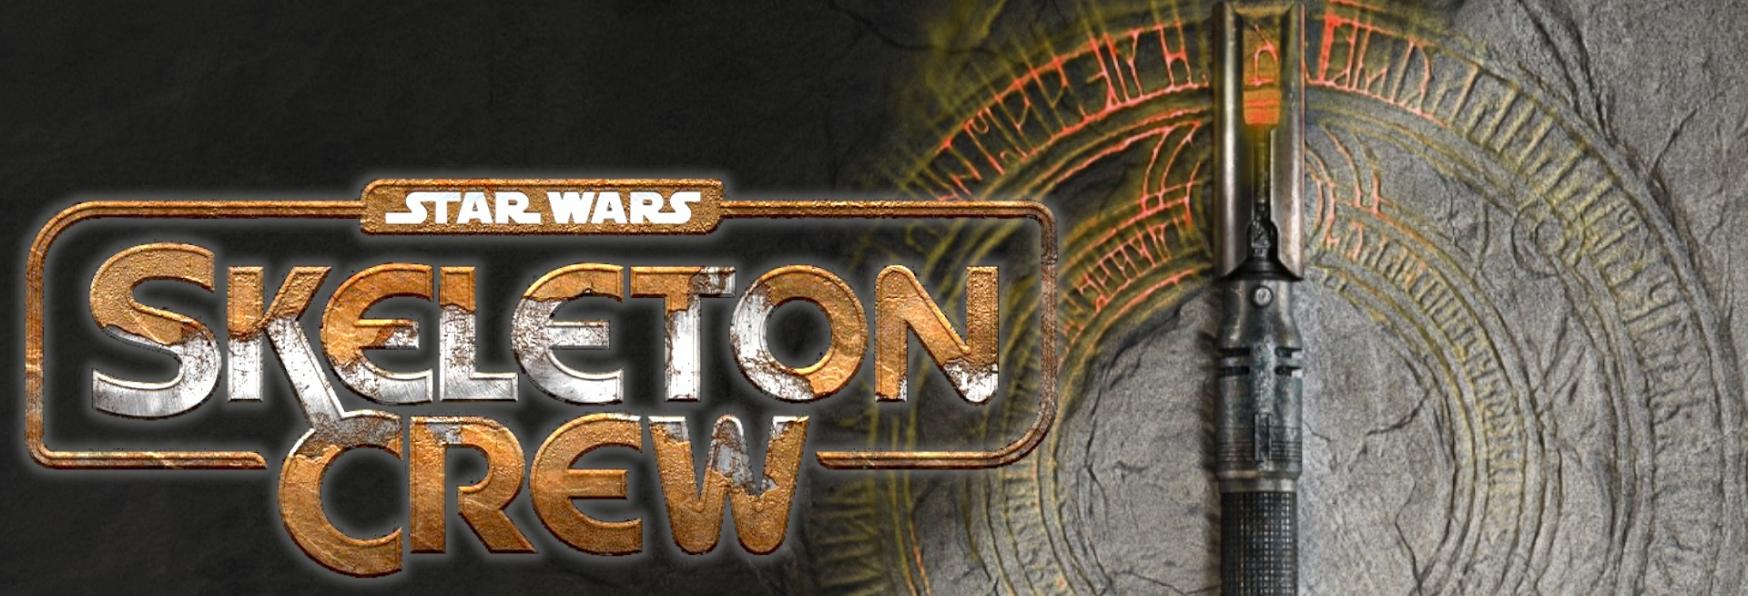 Star Wars: Skeleton Crew - i Creatori affermano, "Sarà una Serie TV adatta a tutte le Età"